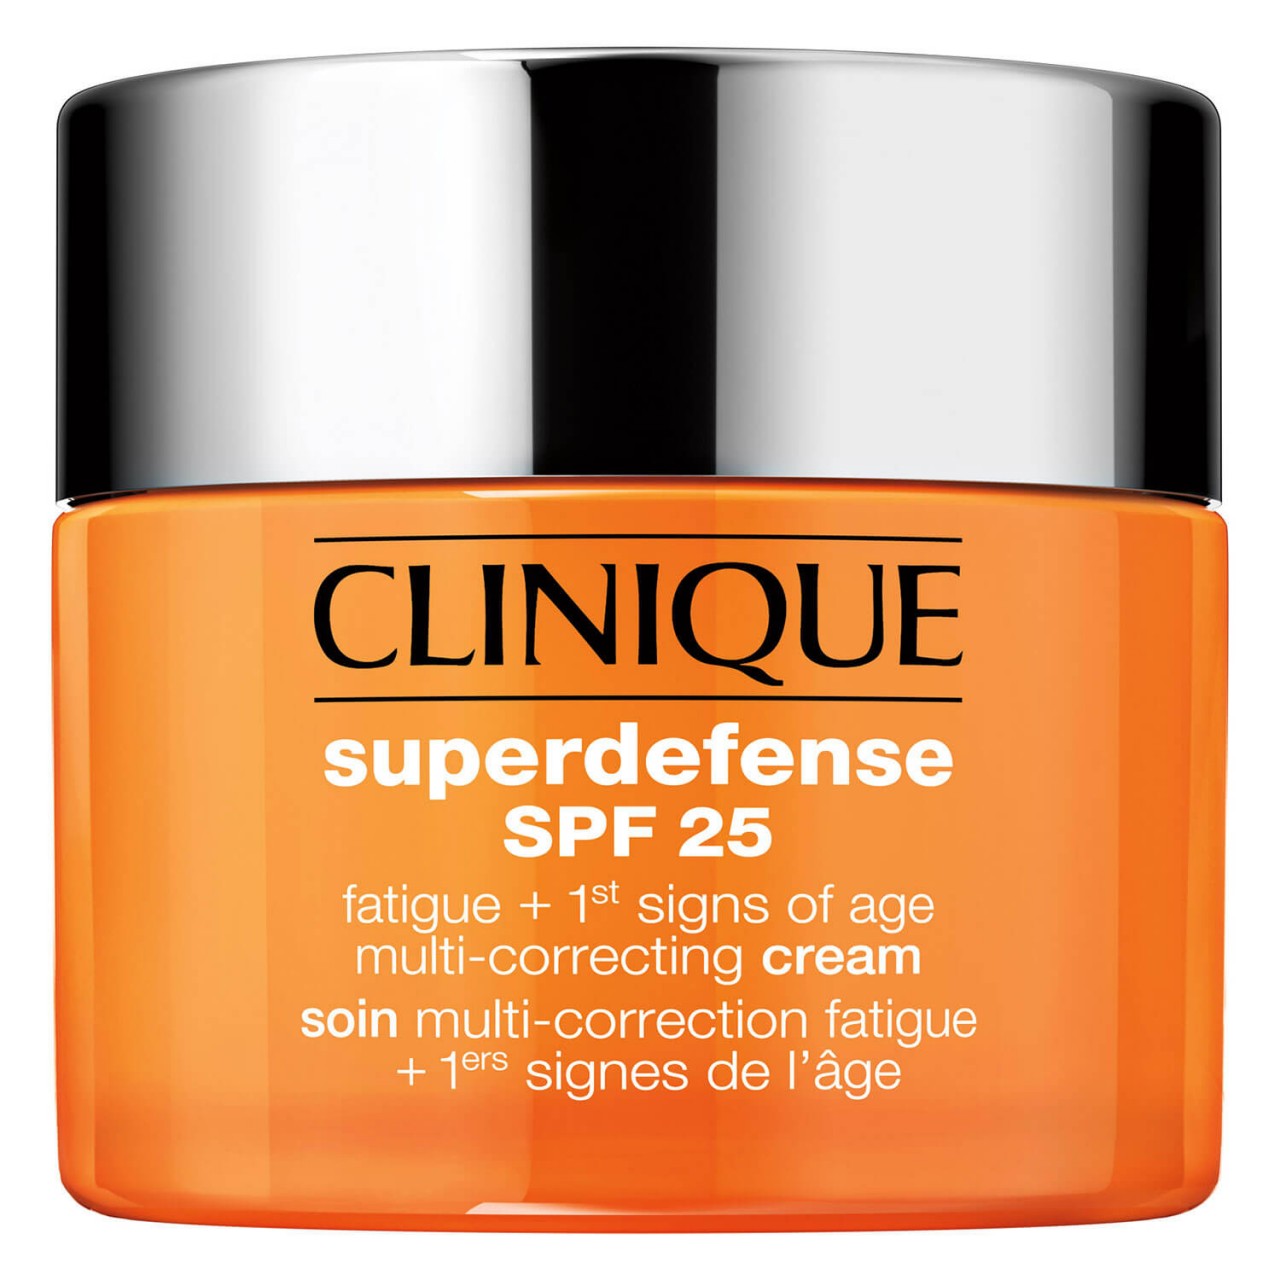 Superdefense - SPF 25 Fatigue + 1st Signs of Age Multi-Correcting Cream 3/4 von Clinique